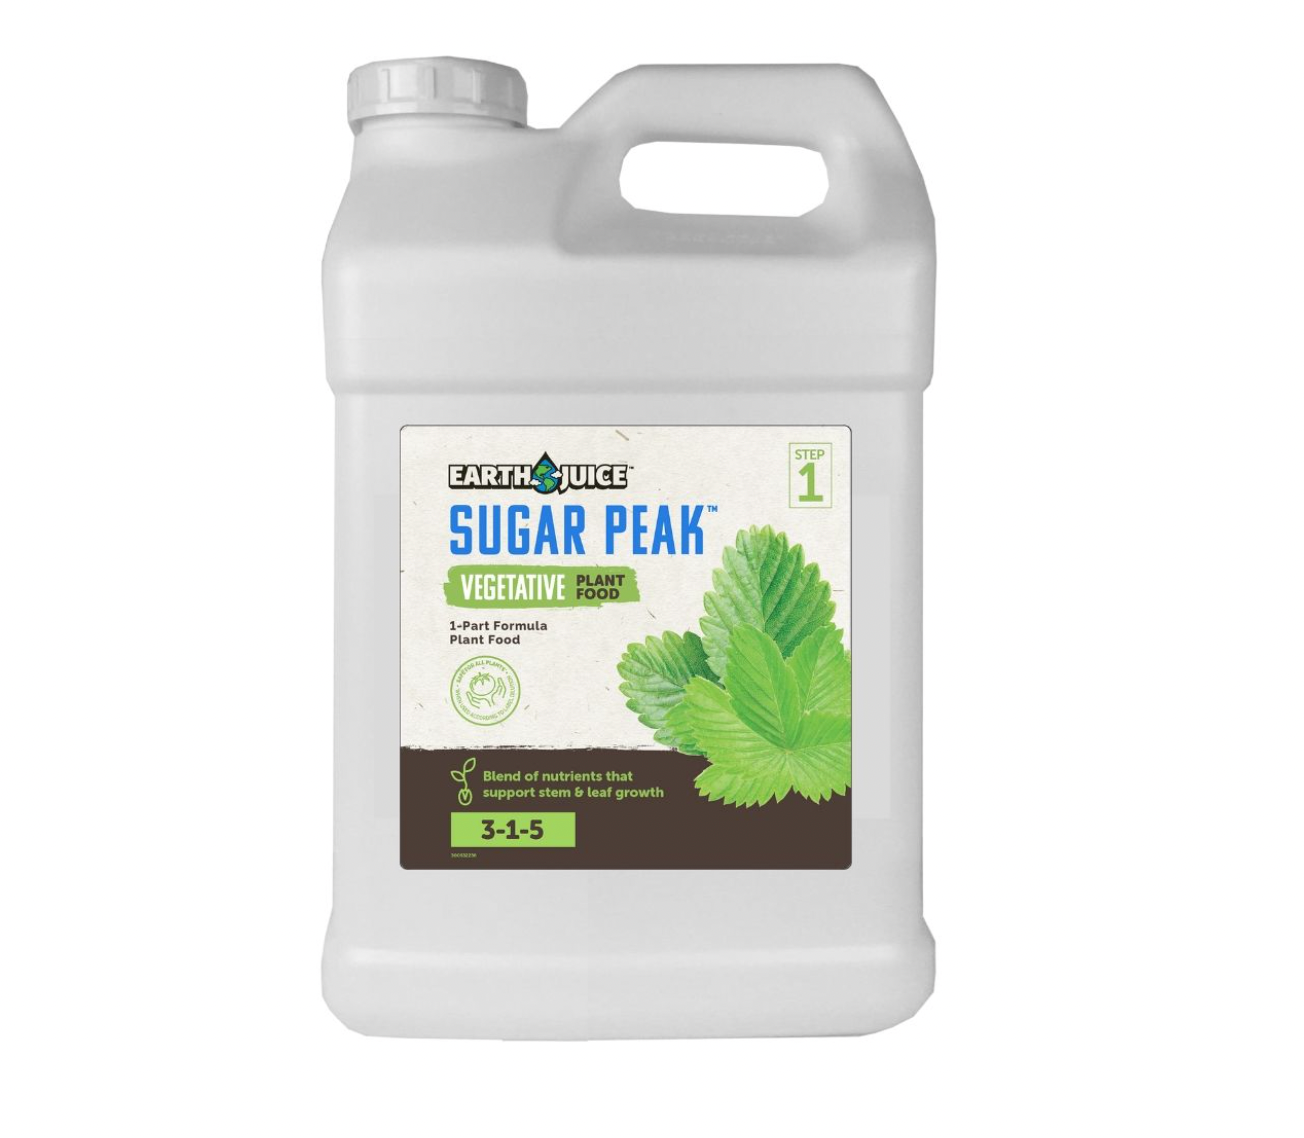 Earth Juice Sugar Peak Vegetative